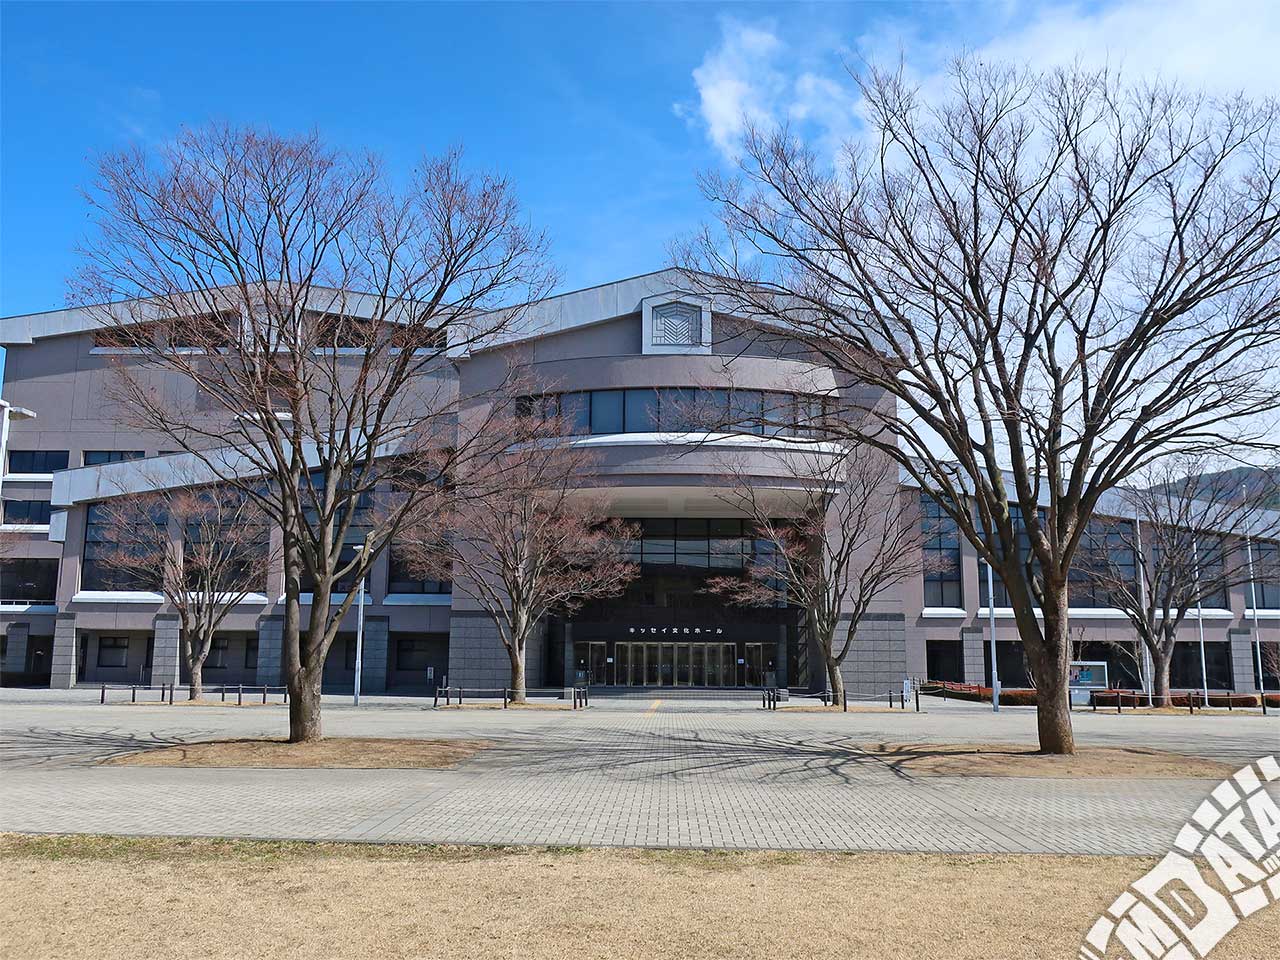 キッセイ文化ホール（長野県松本文化会館）の写真 撮影日:2019/4/4 Photo taken on 2019/04/04